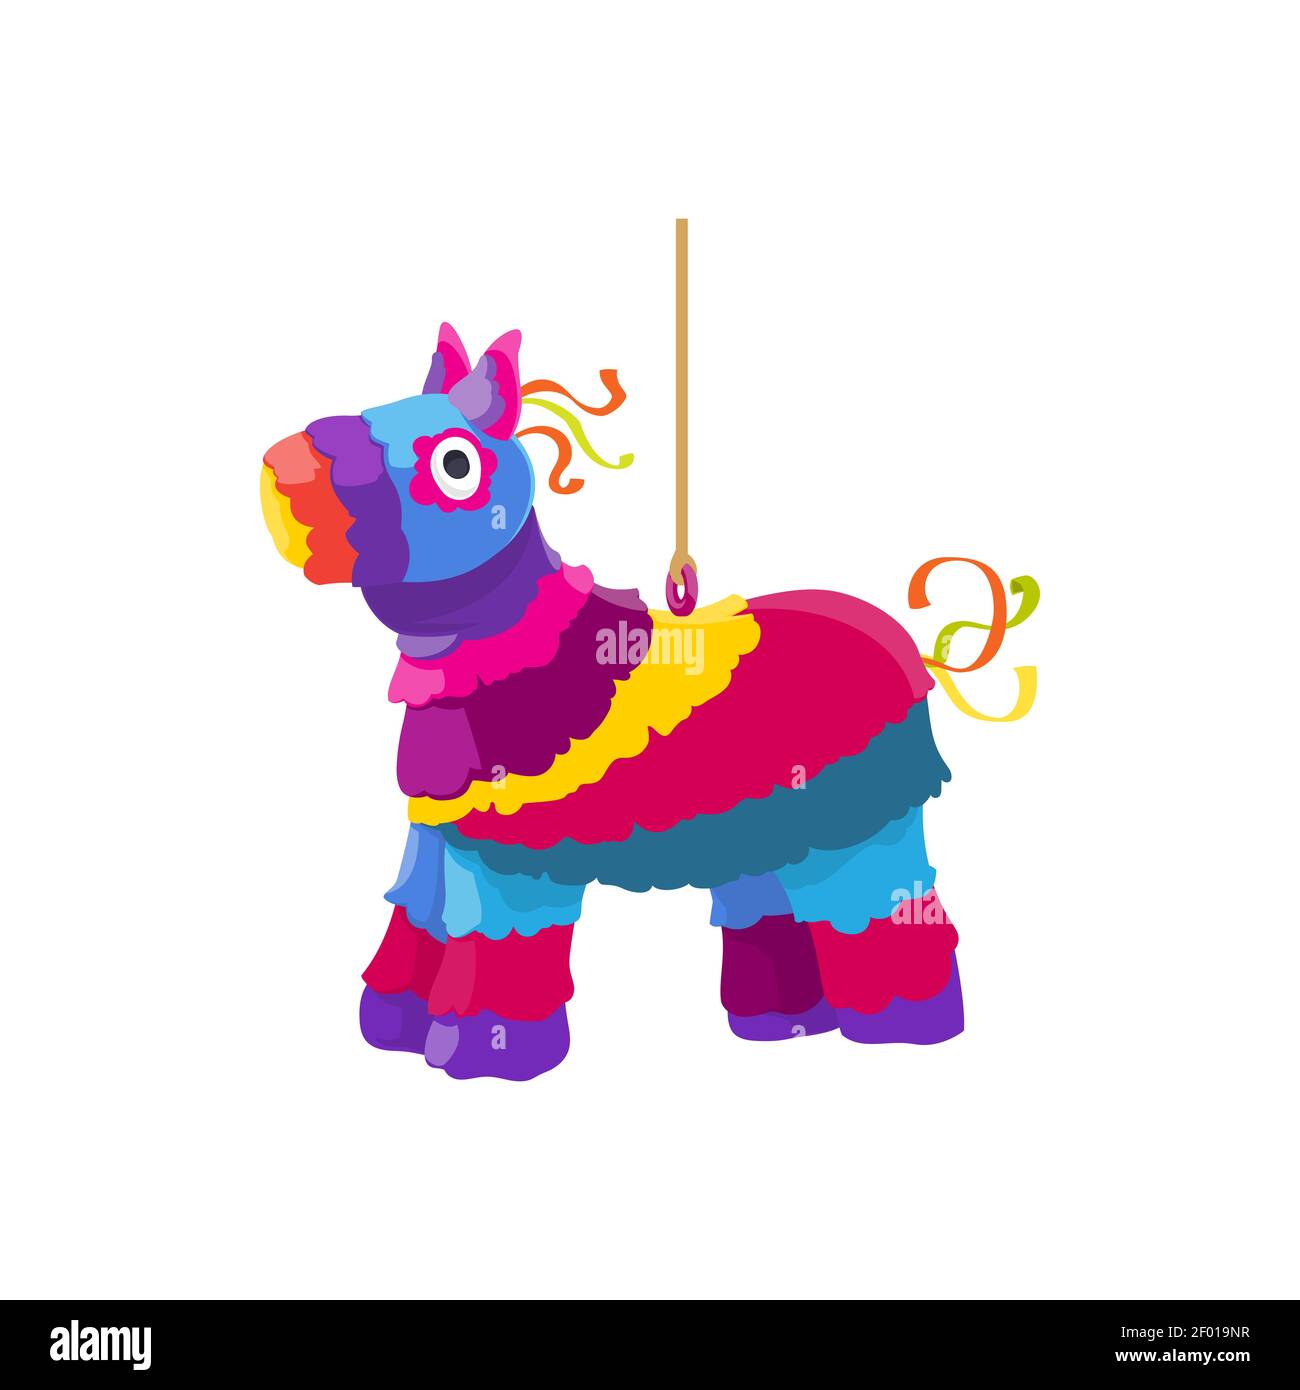 Piñata De juguete para Fiesta, recuerdo De caballo mexicano, dulces De  cumpleaños, Cinco De Mayo, decoraciones